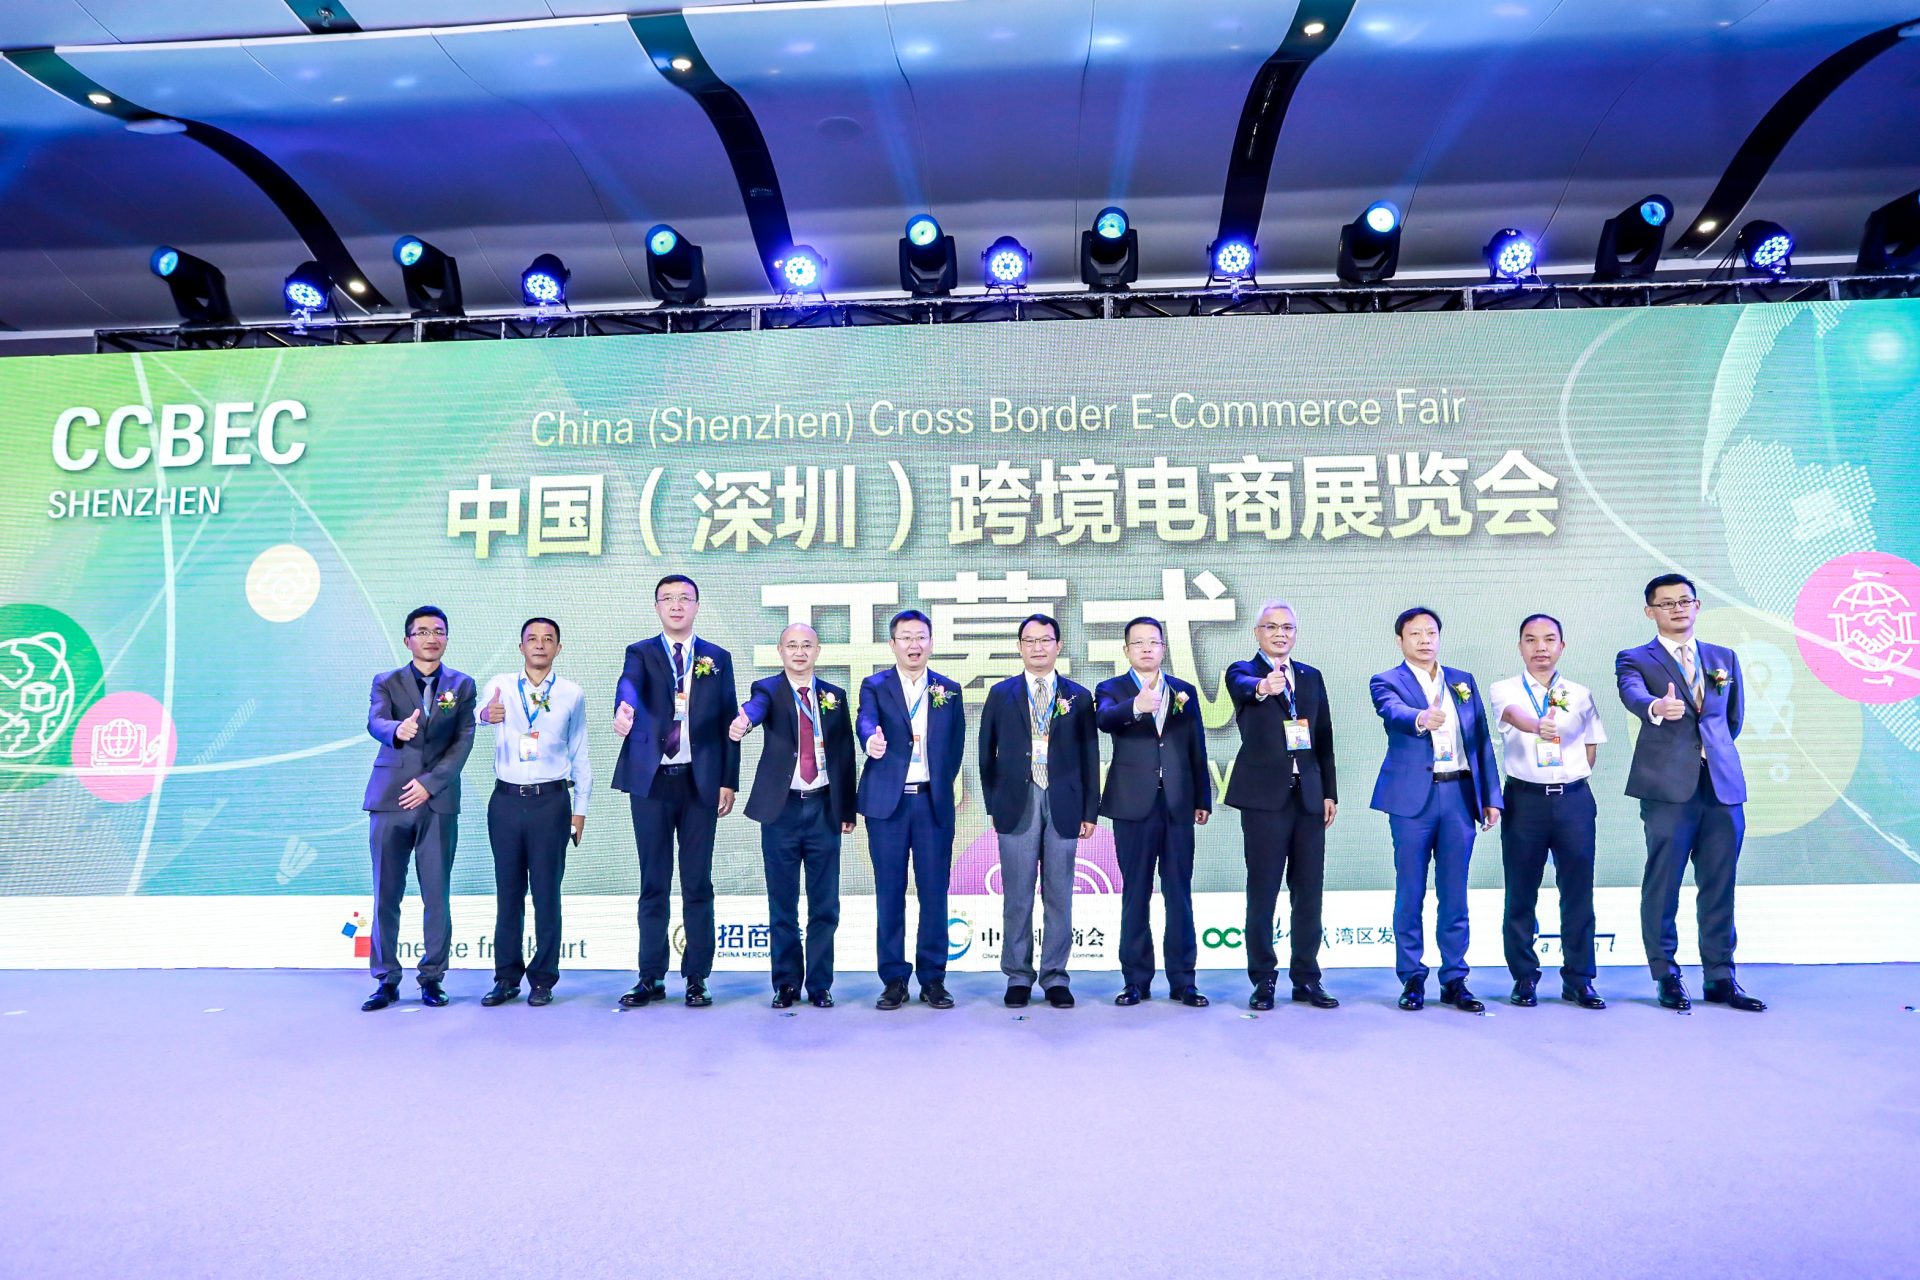 战略合作 | Amanbo邀您共赴跨境电商年度大展--CCBEC中国(深圳)跨境电商展览会